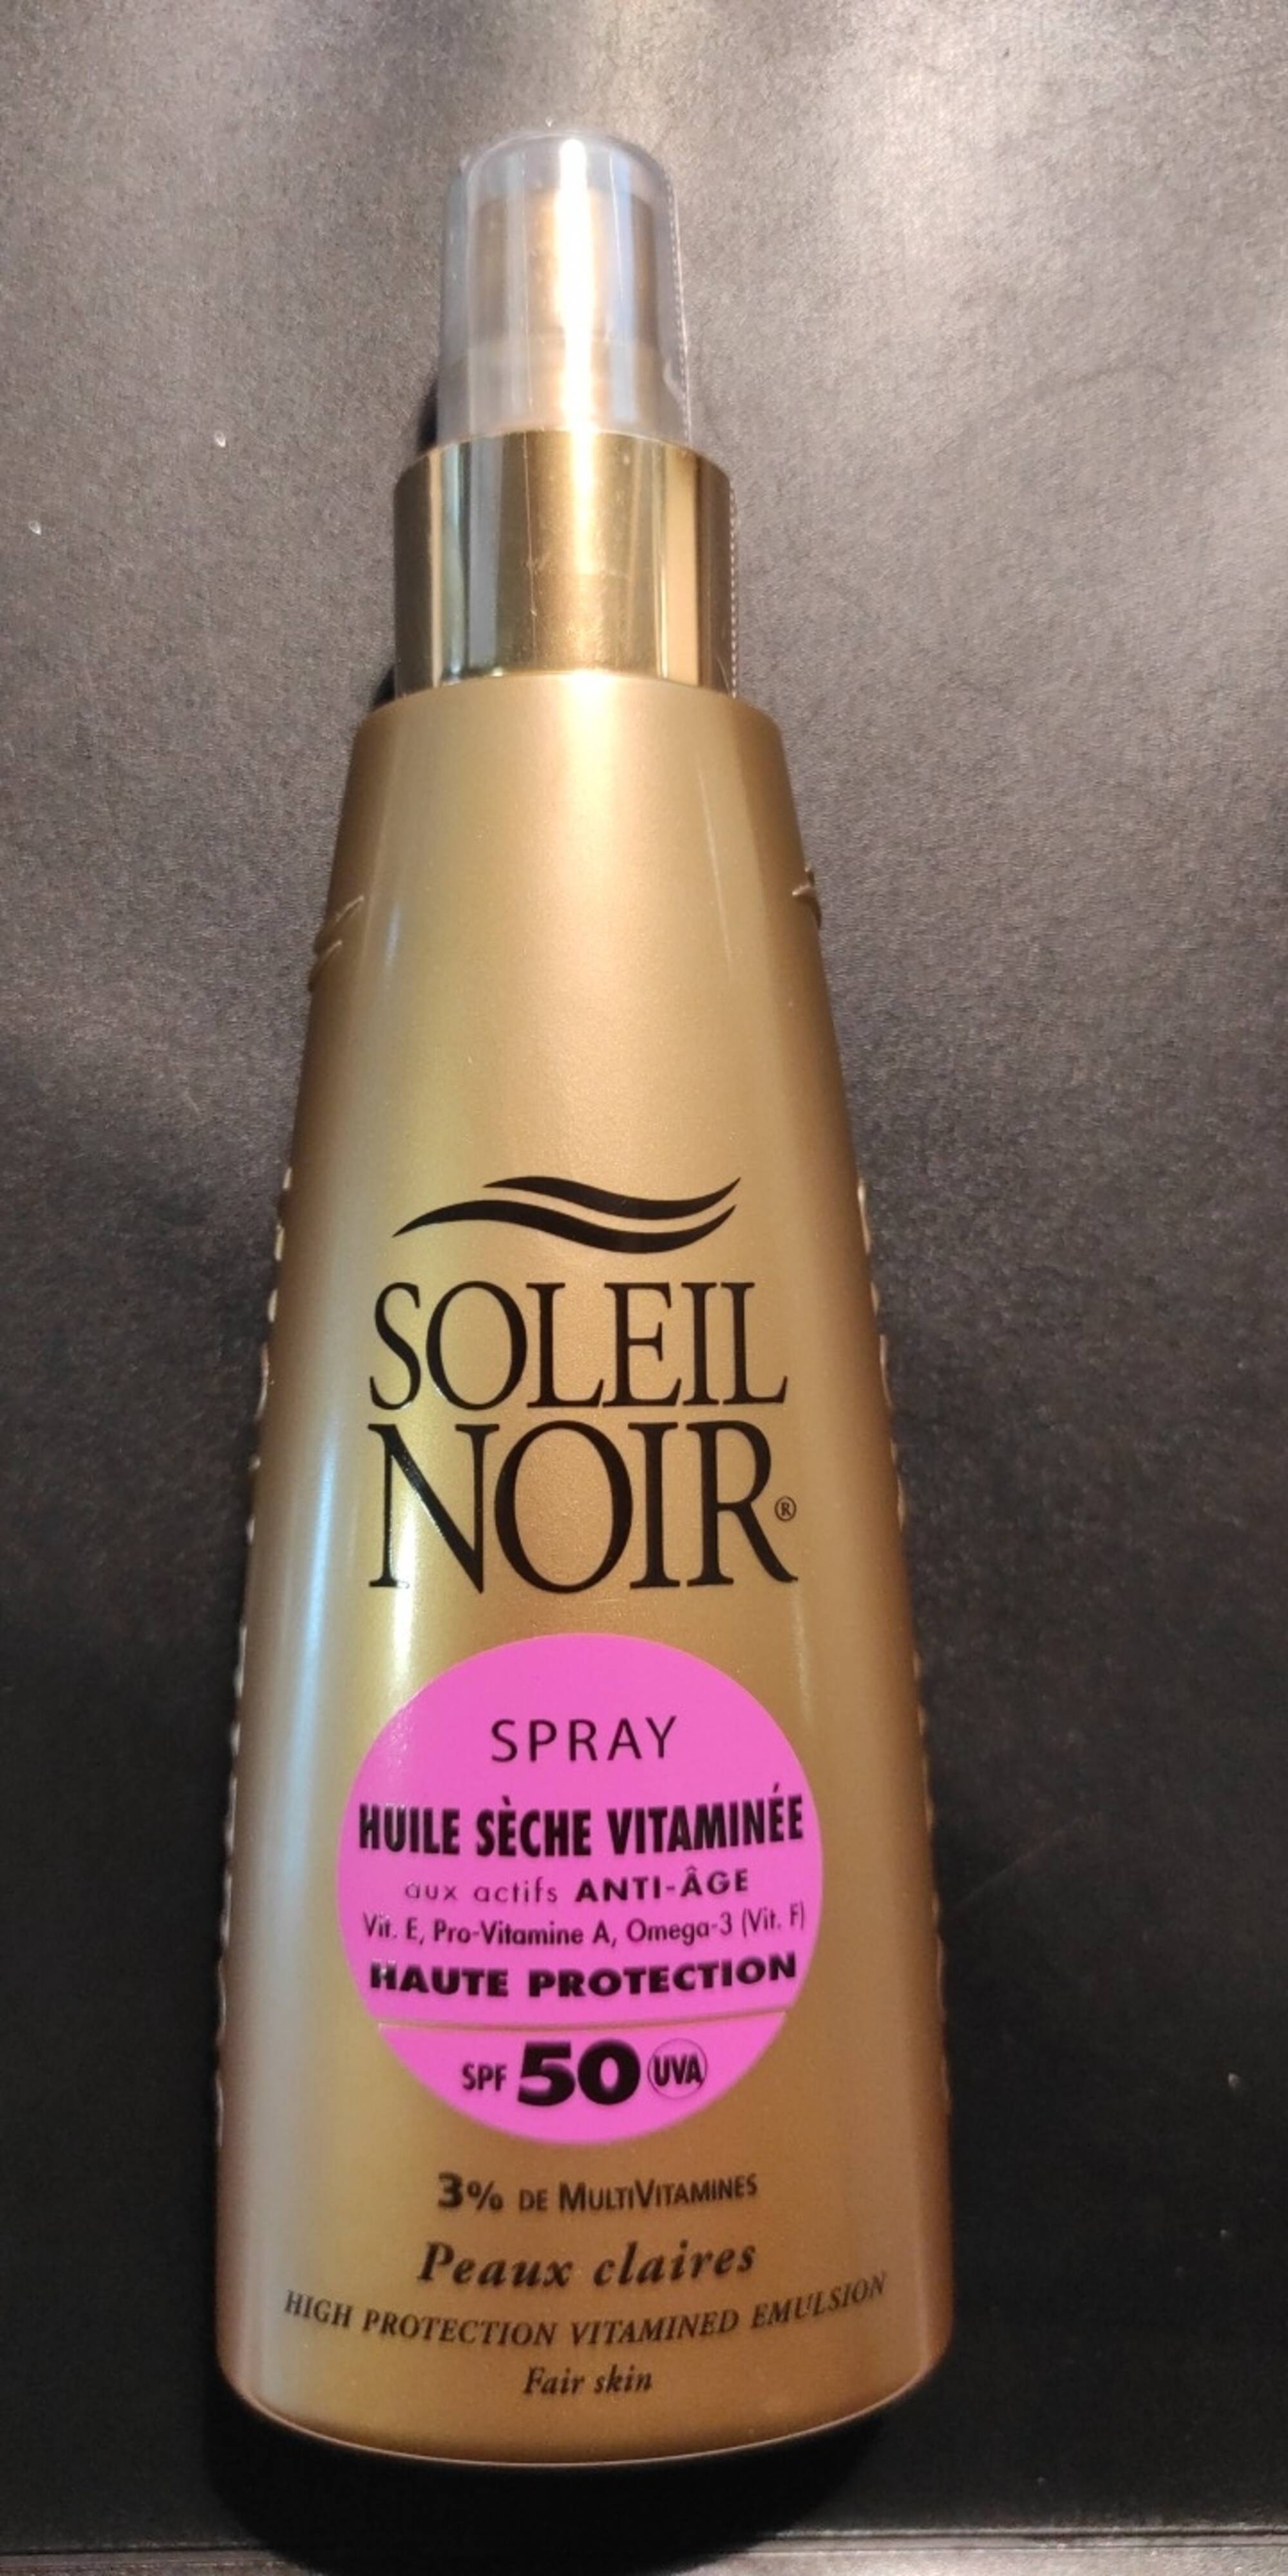 SOLEIL NOIR - Spray huile sèche vitaminée SPF 50 haute protection